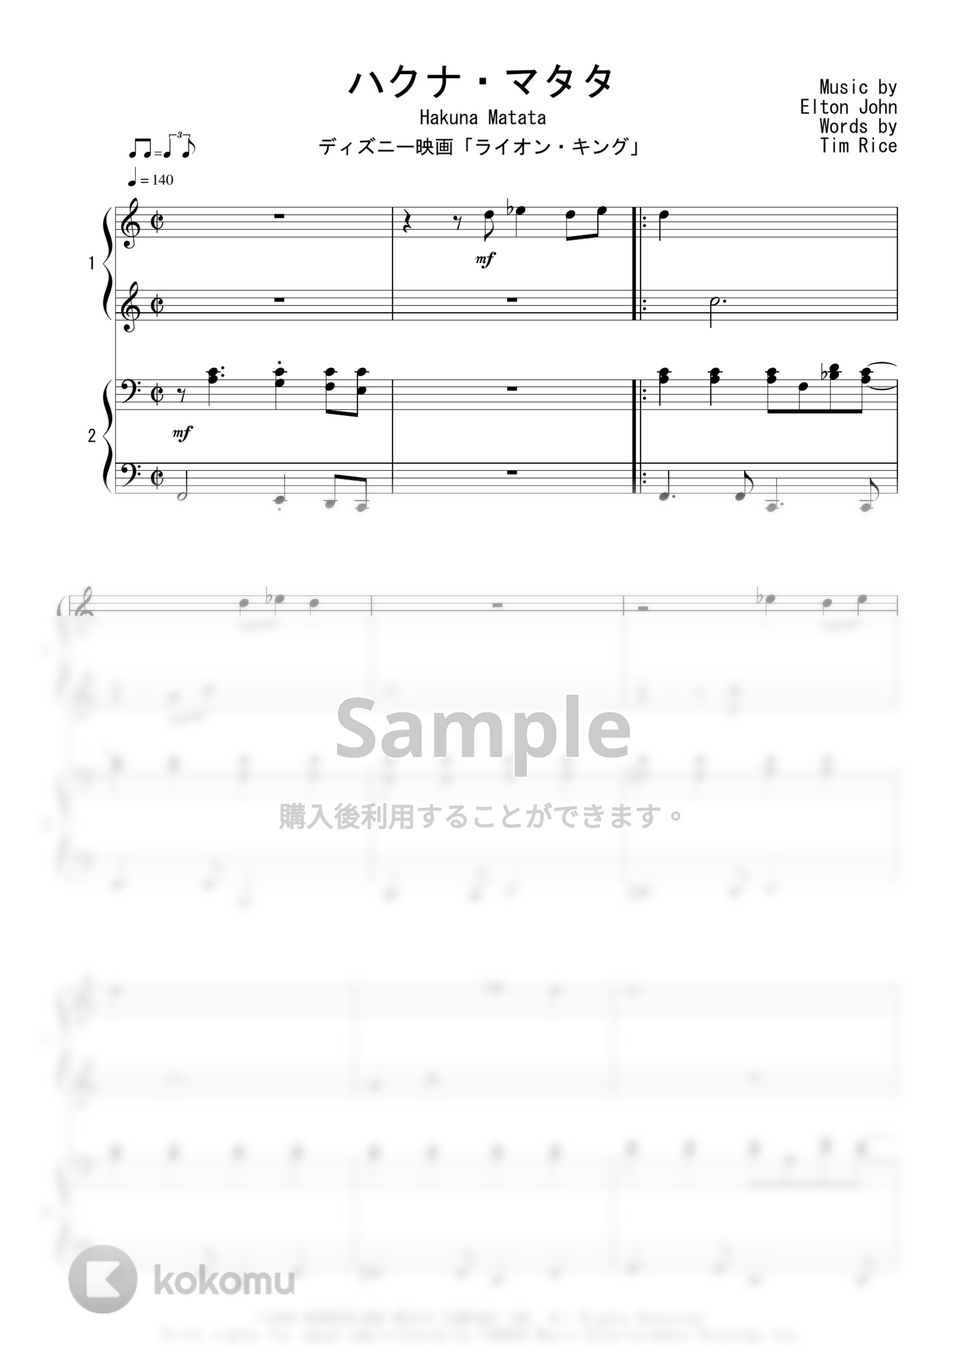 ディズニー映画「ライオン・キング」 - ハクナ・マタタ (ピアノ連弾) by Peony